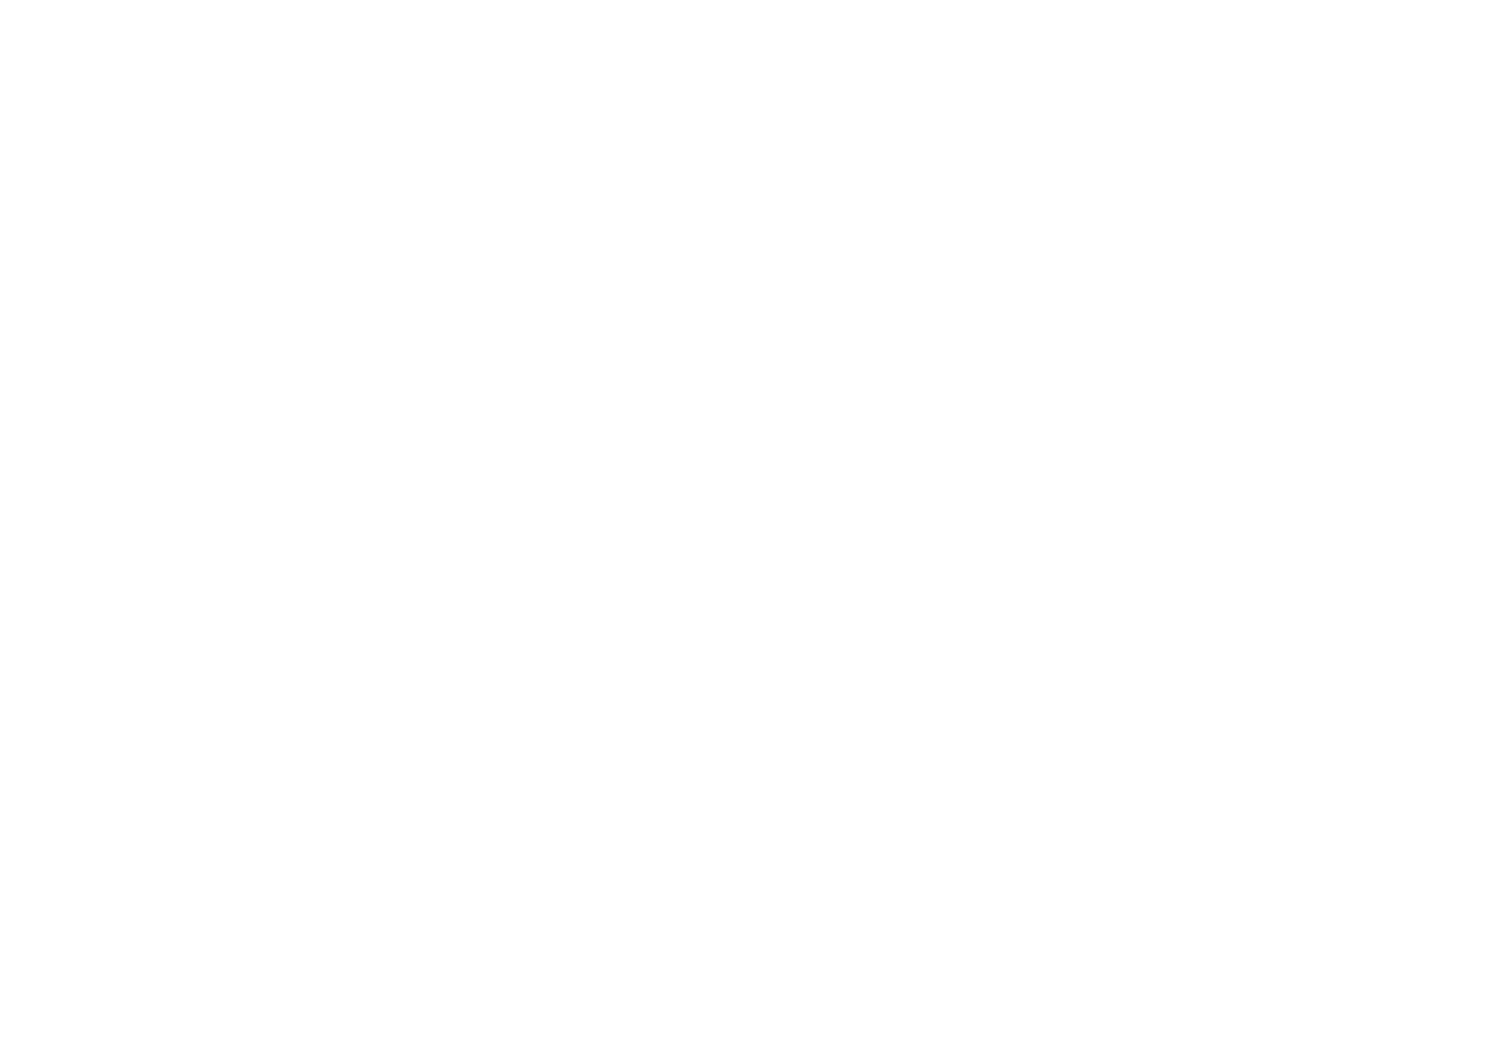 Tahauya Jackson